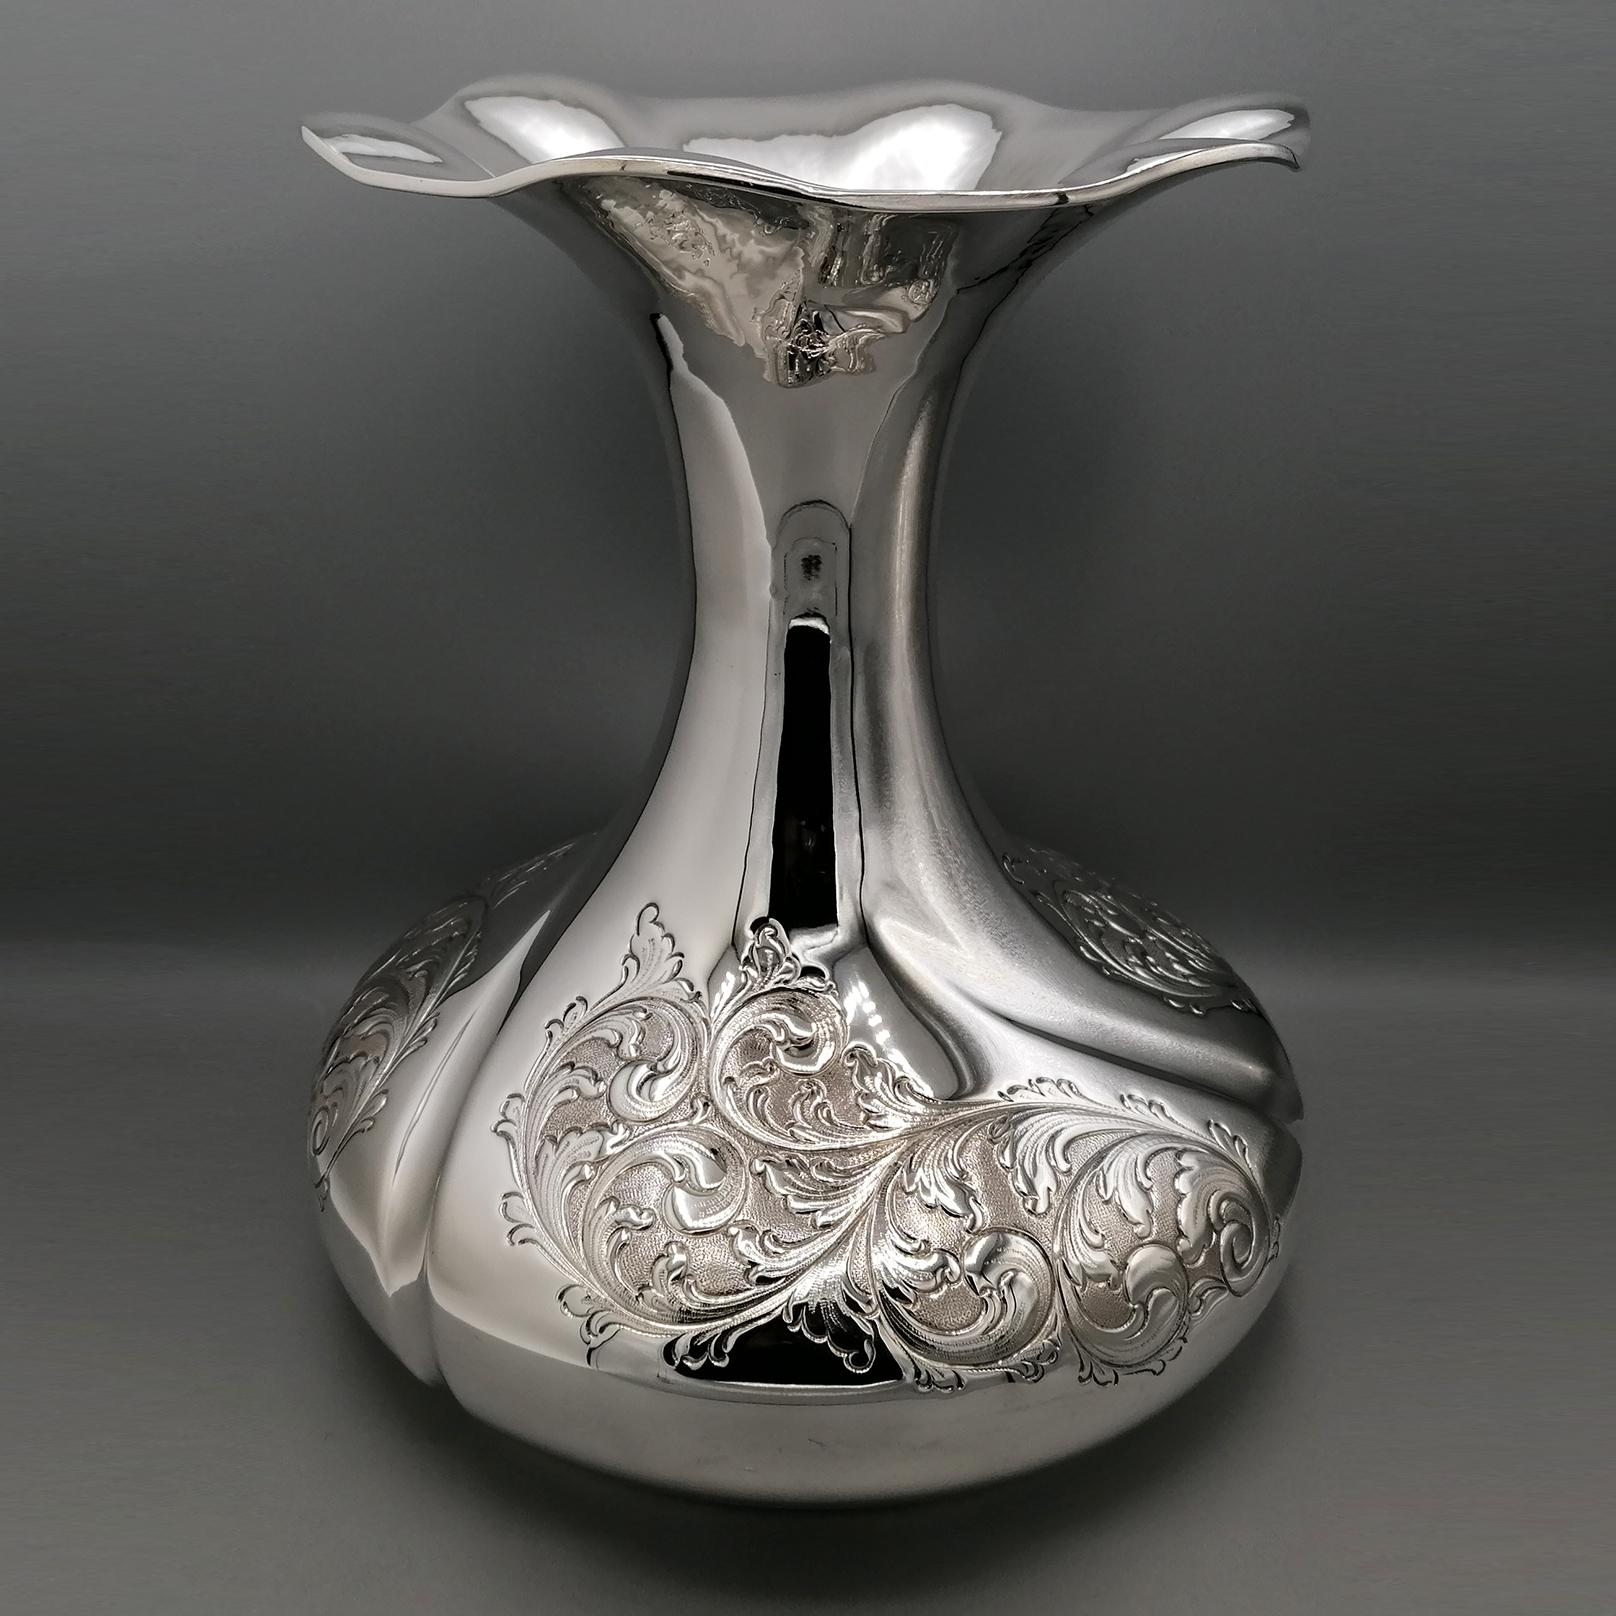 Grand vase en argent massif.
De grandes dimensions, ce vase a été réalisé entièrement à la main dans un style baroque revisité.
La base est très large et présente des gaufrages et des gravures à la main qui reproduisent les volutes typiques du style